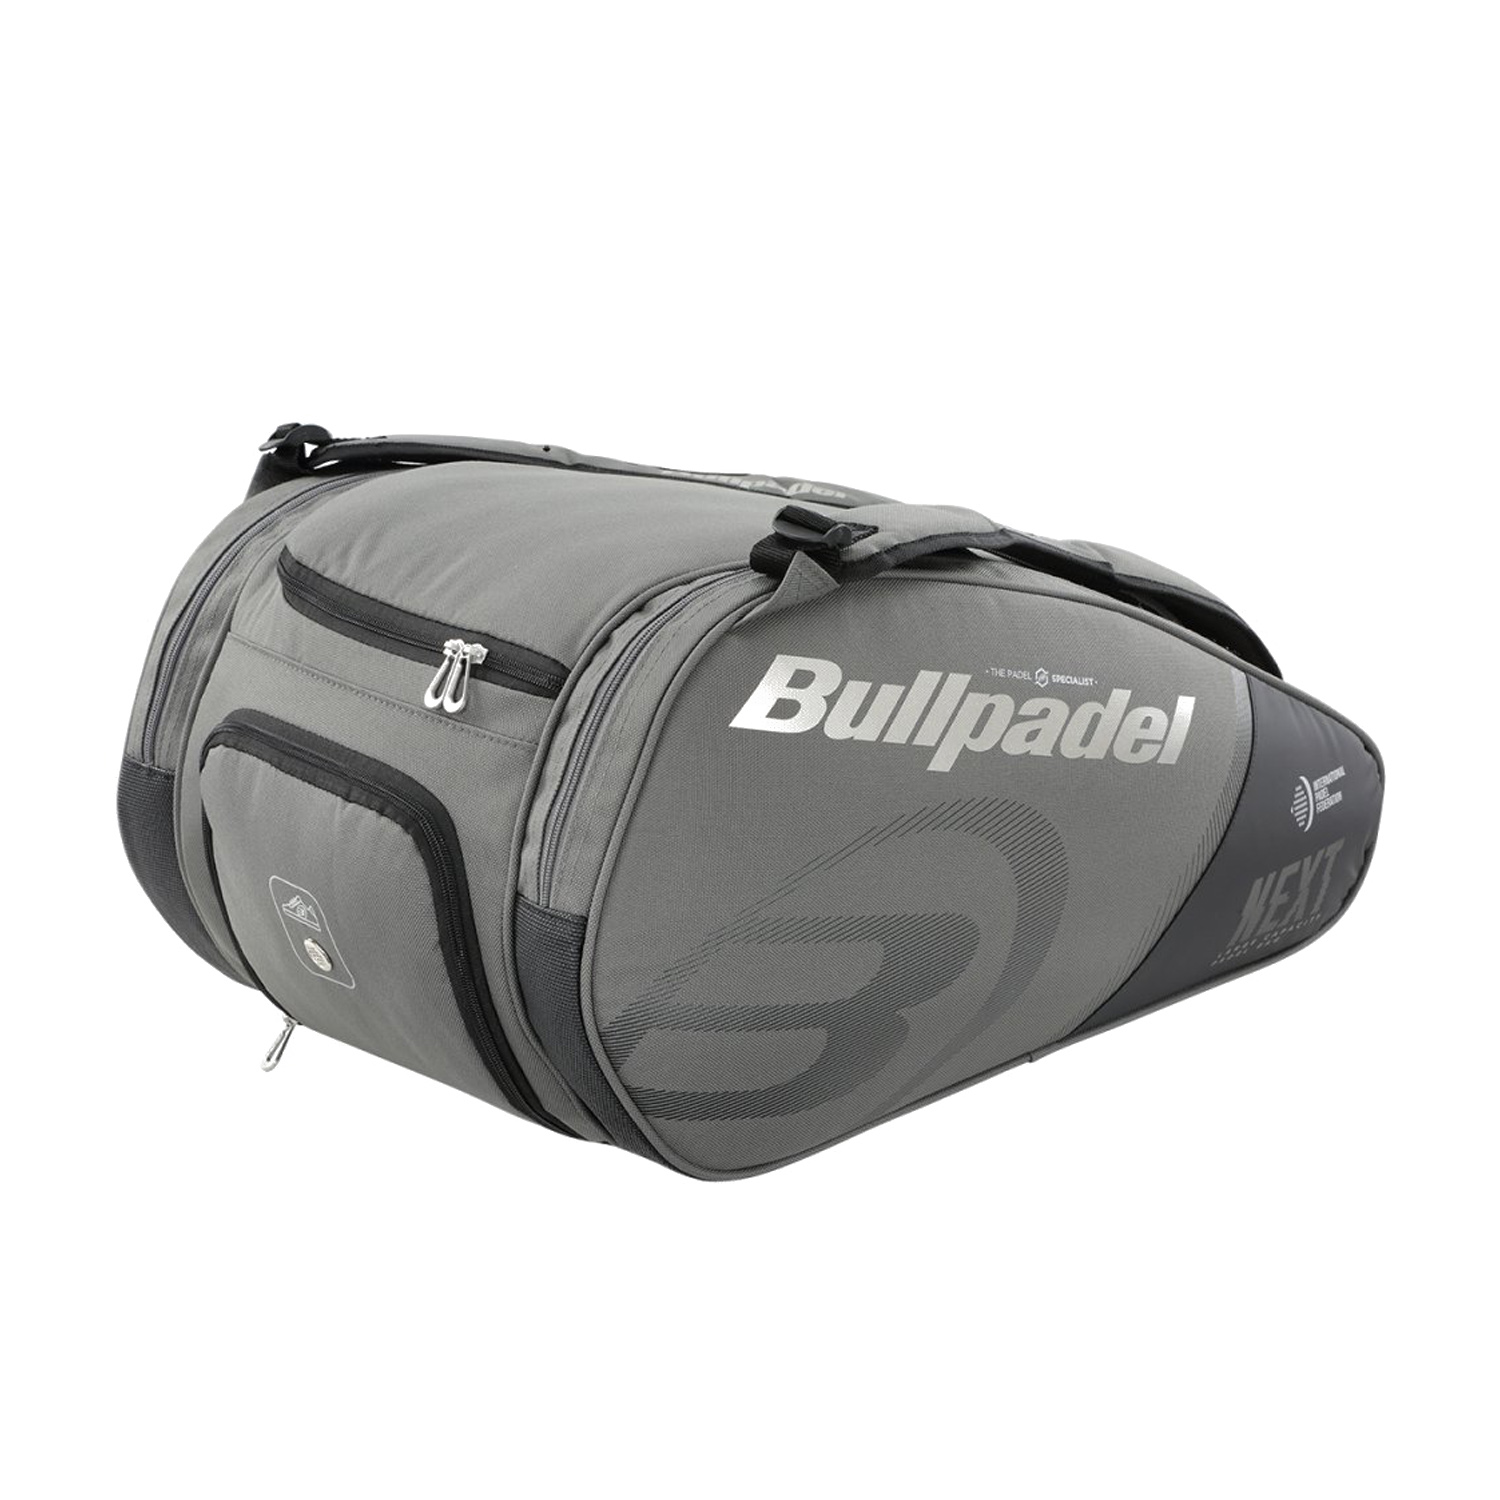 Bullpadel Next Bag - Black